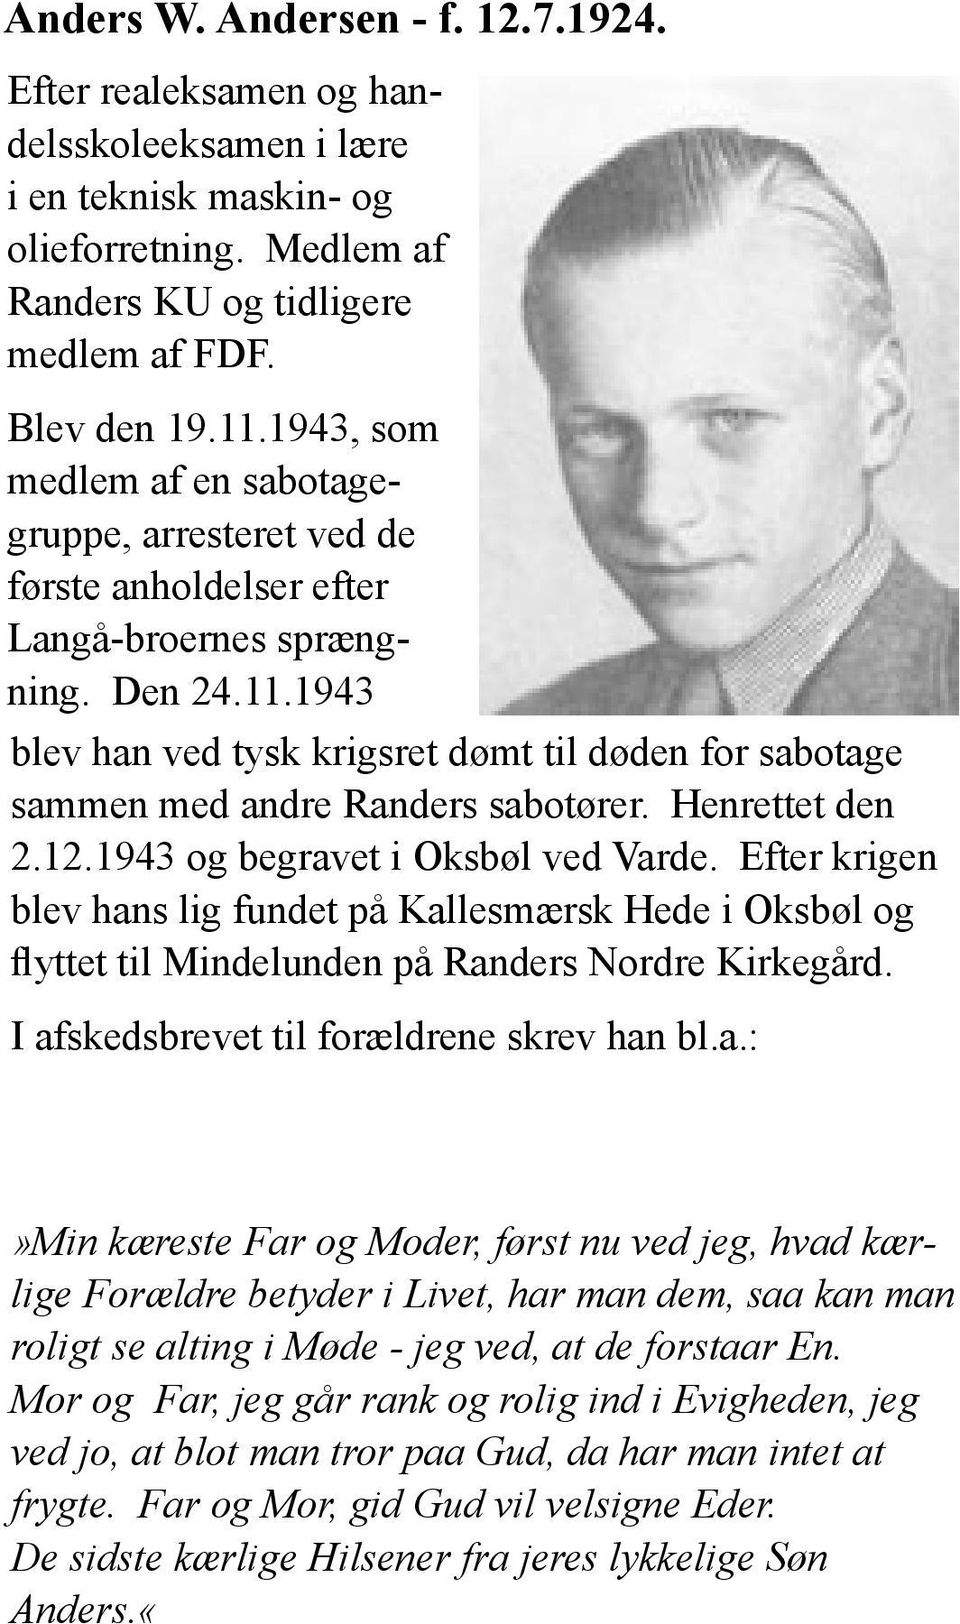 1943 blev han ved tysk krigsret dømt til døden for sabotage sammen med andre Randers sabotører. Henrettet den 2.12.1943 og begravet i Oksbøl ved Varde.